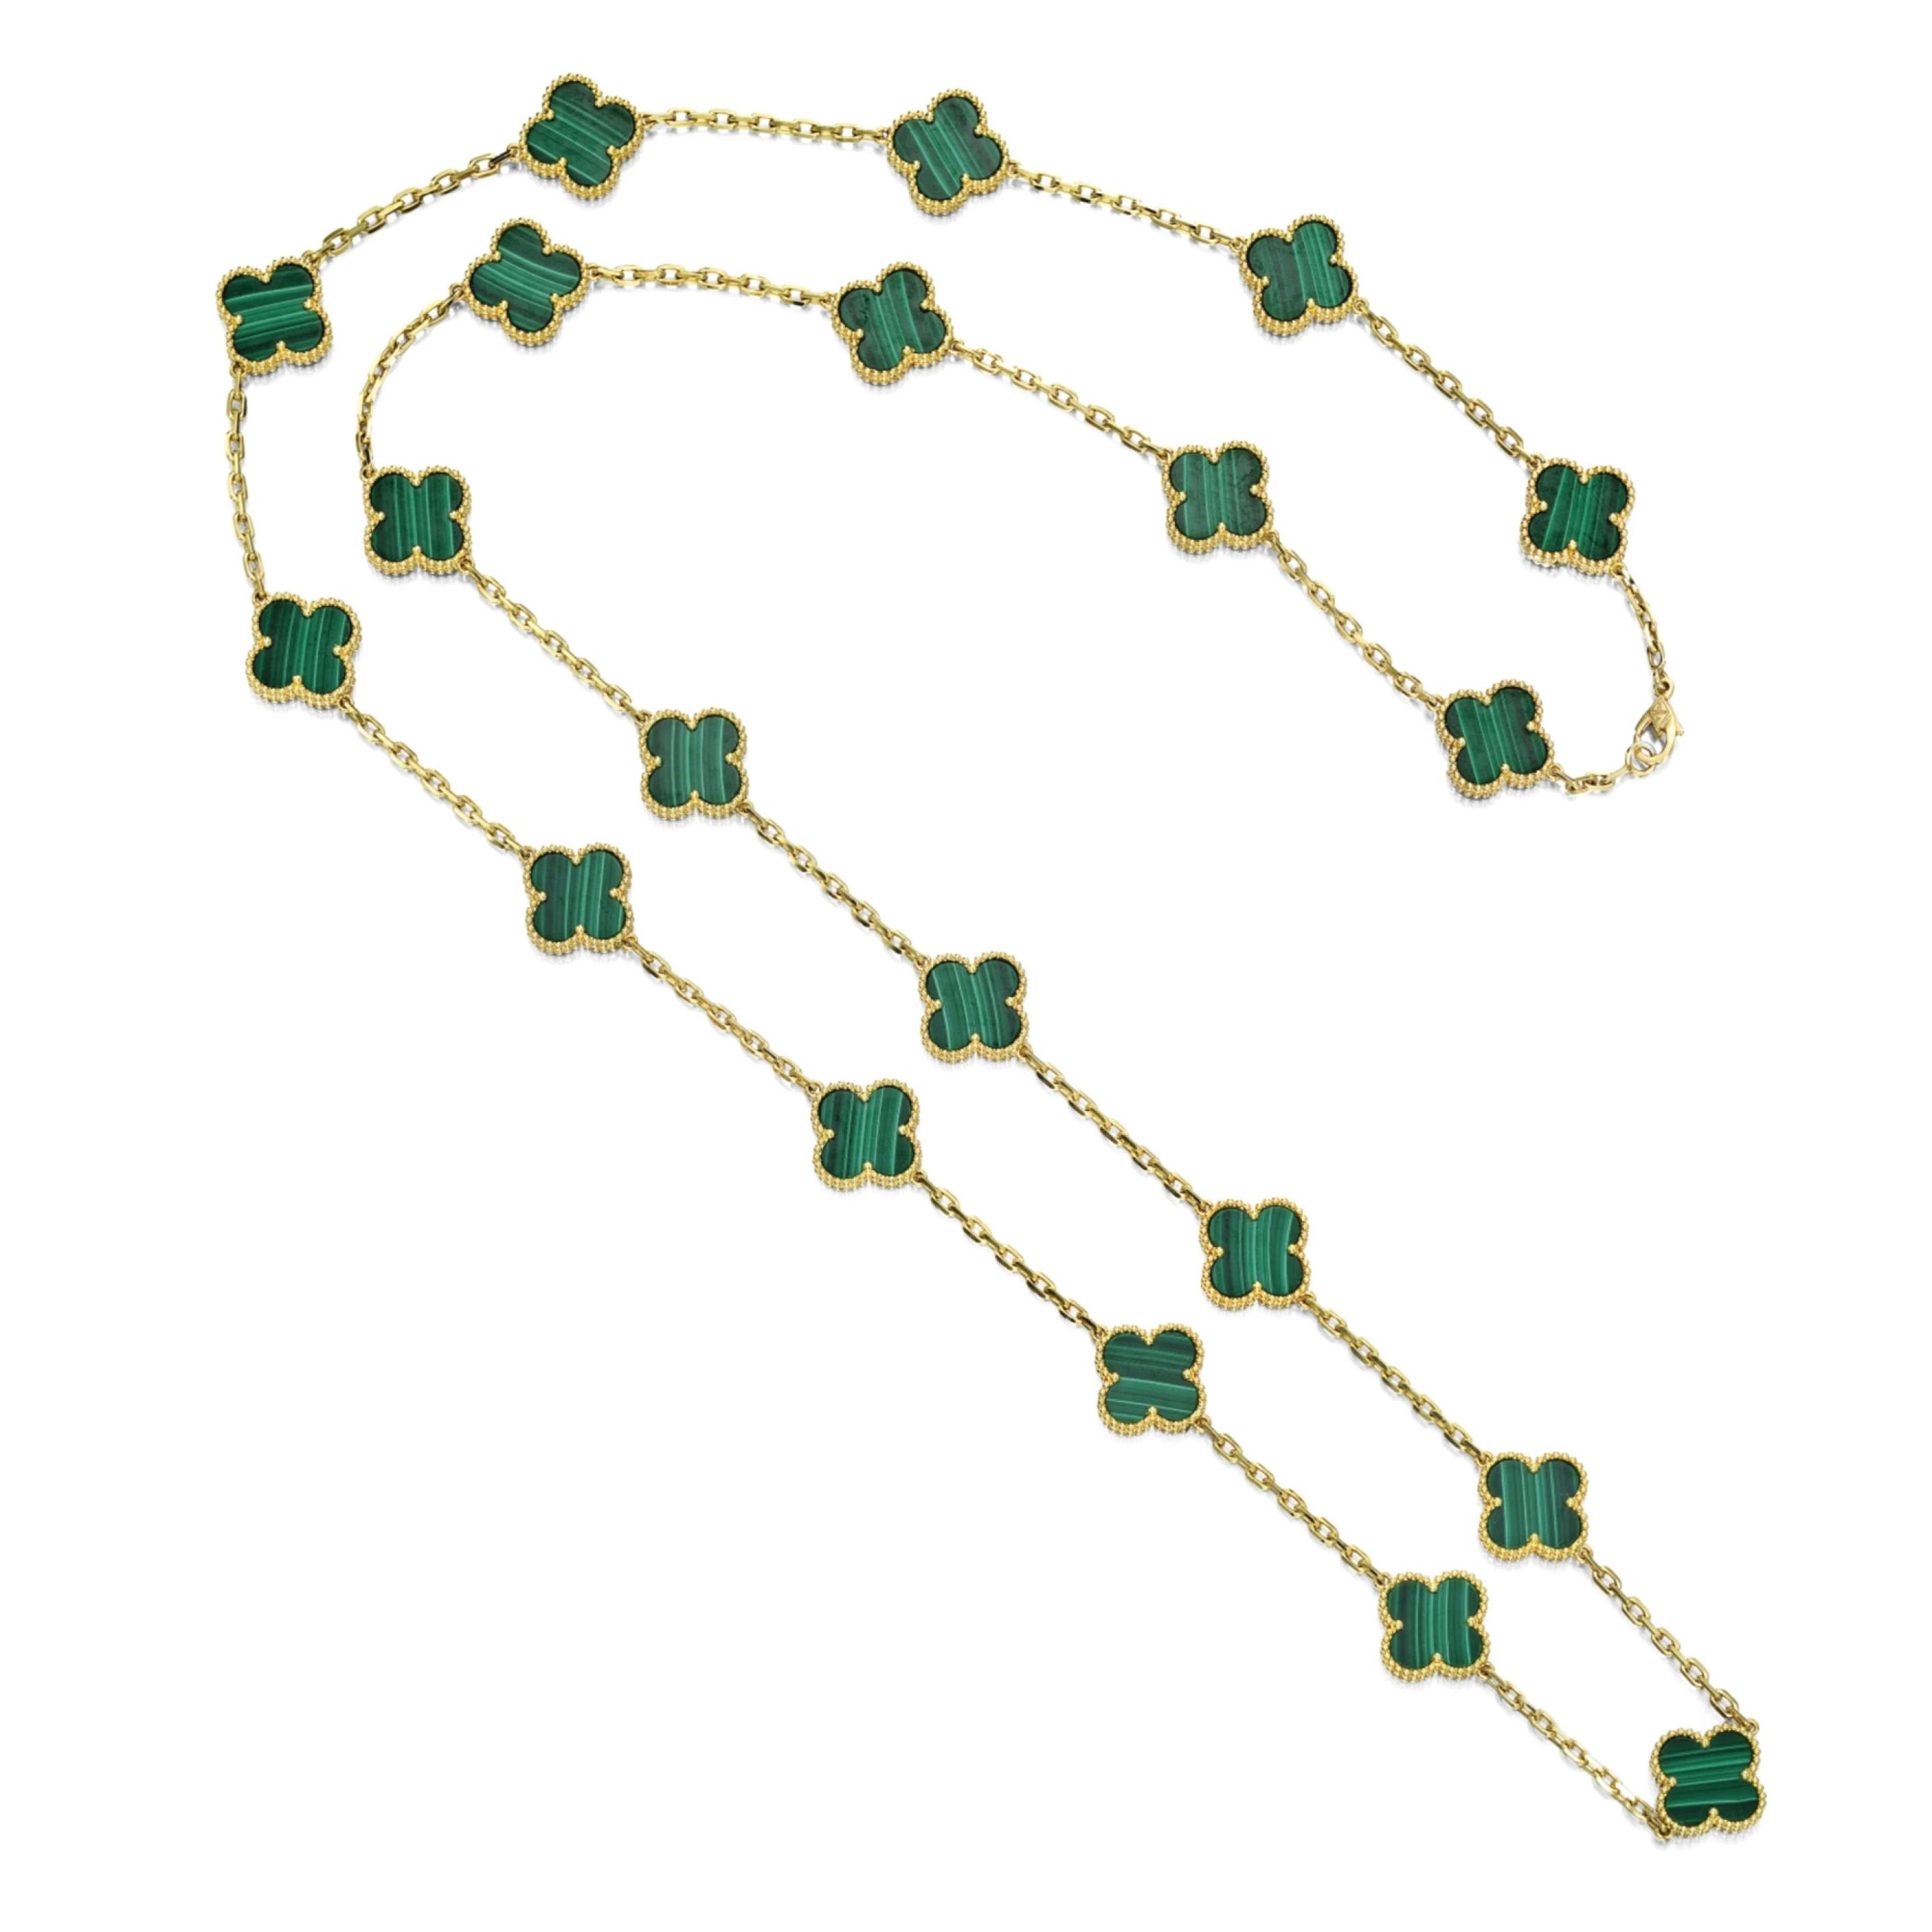 Van Cleef & Arpels Style Counter Four-Leaf Clover Necklace – El blin-blín